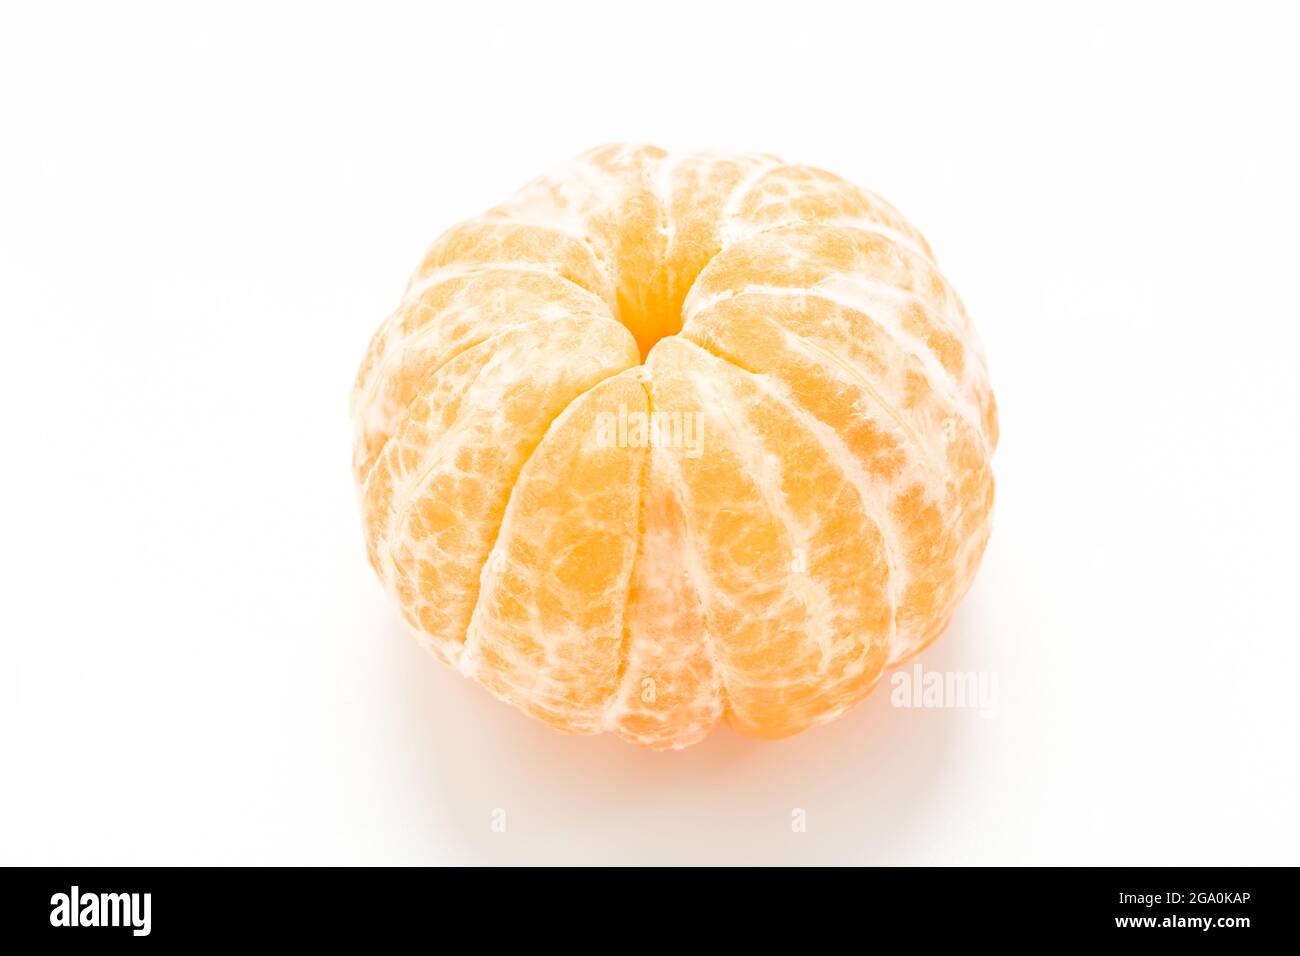 peeled tangerine on white background Stock Photo